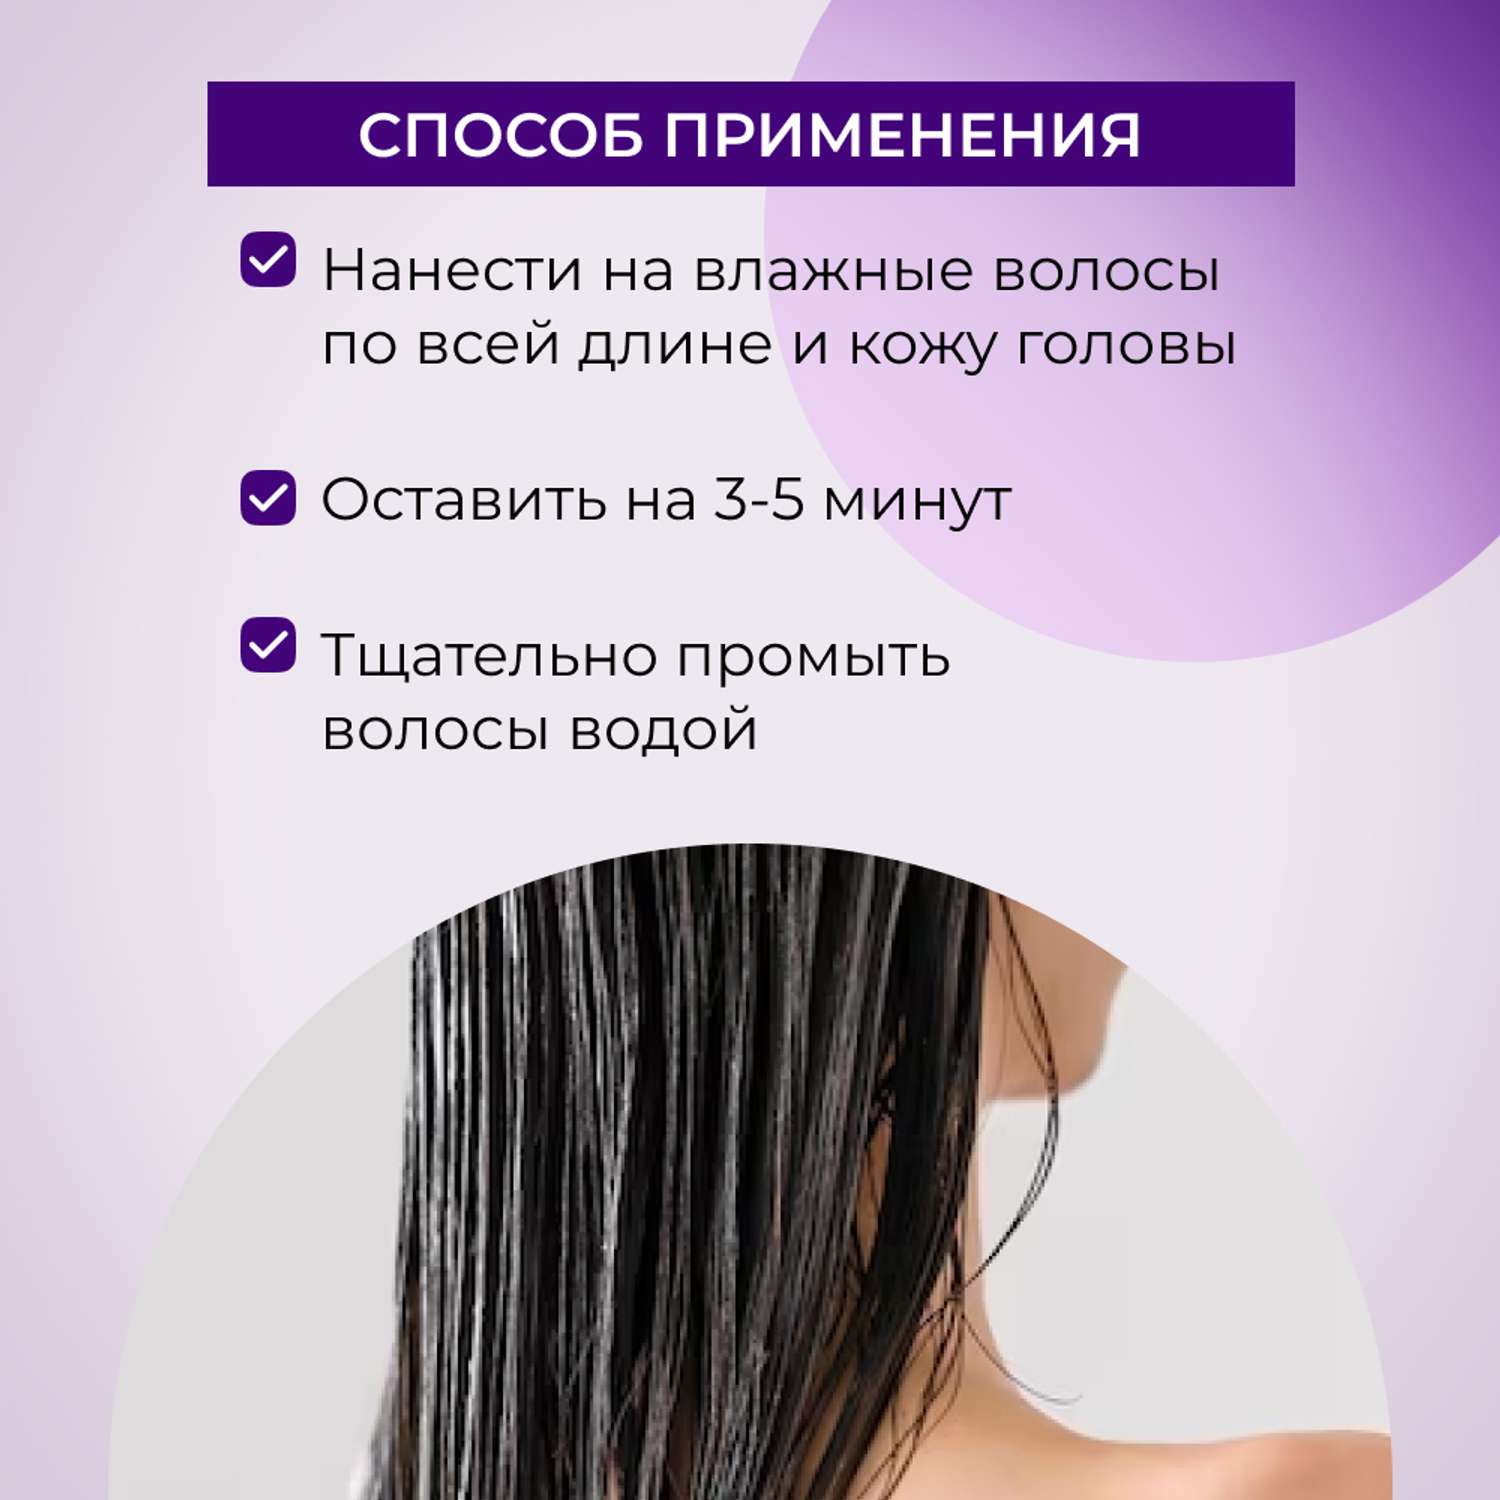 Крем-маска Siberina натуральная «Ускорение роста волос» 150 мл - фото 6